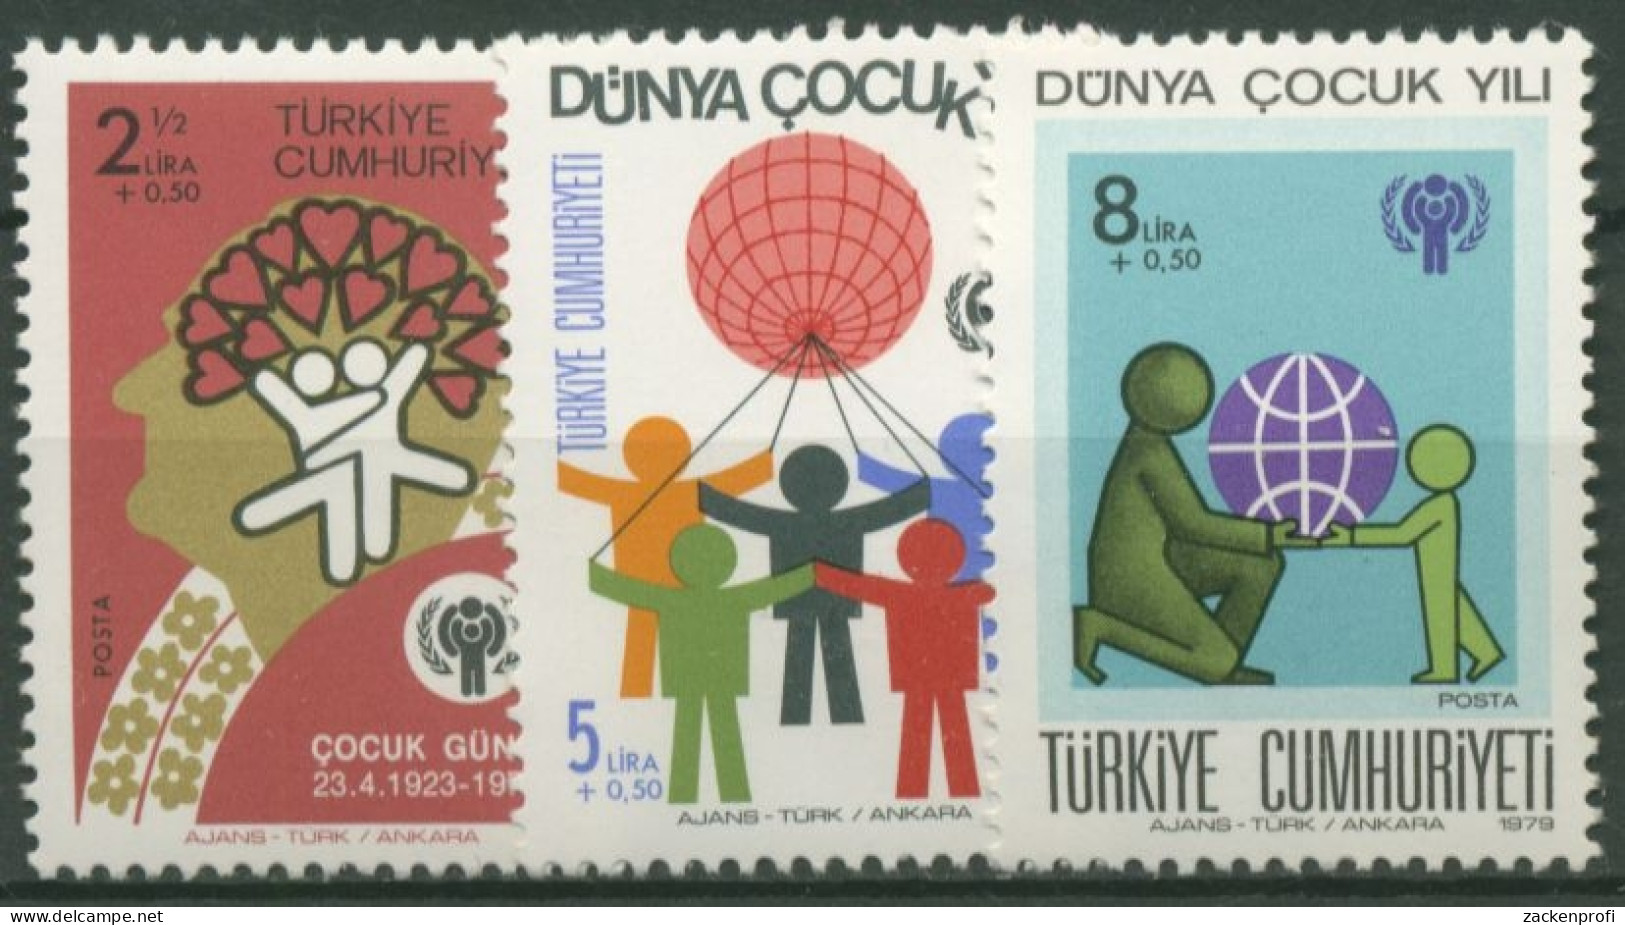 Türkei 1979 Internationales Jahr Des Kindes 2474/76 Postfrisch - Ungebraucht